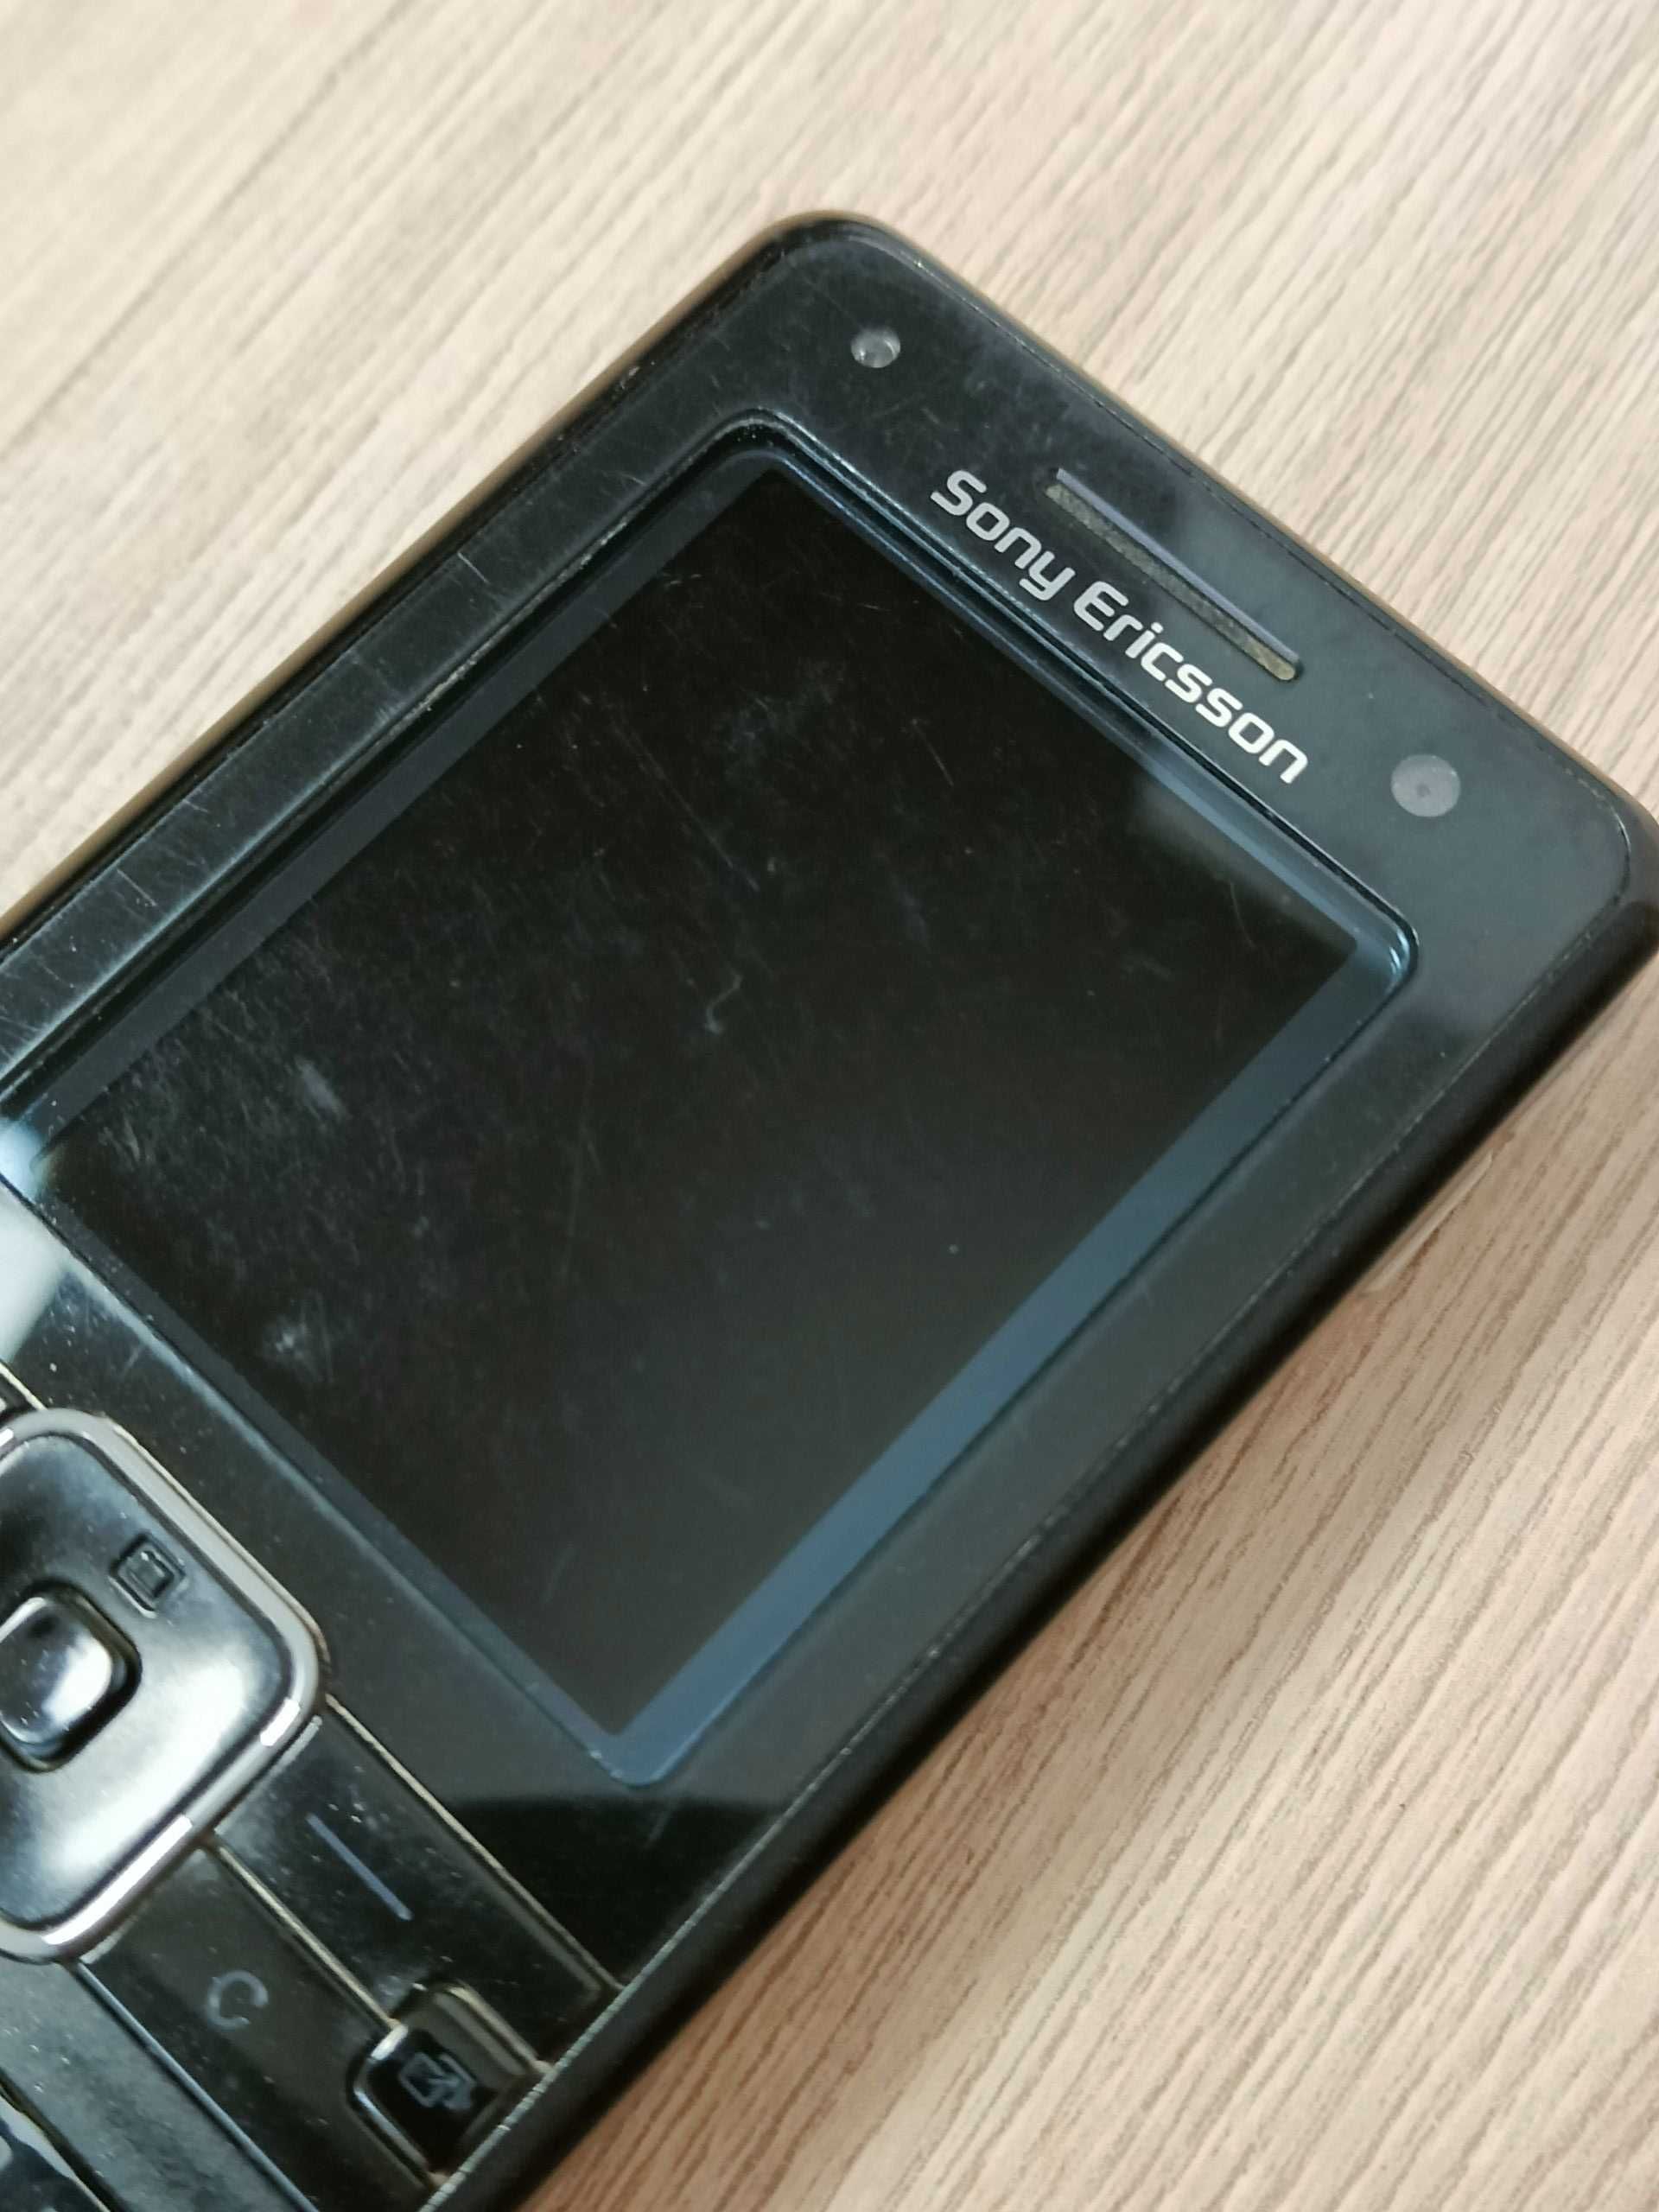 Telefon komórkowy Sony Ericsson K770i + ładowarka + kabel